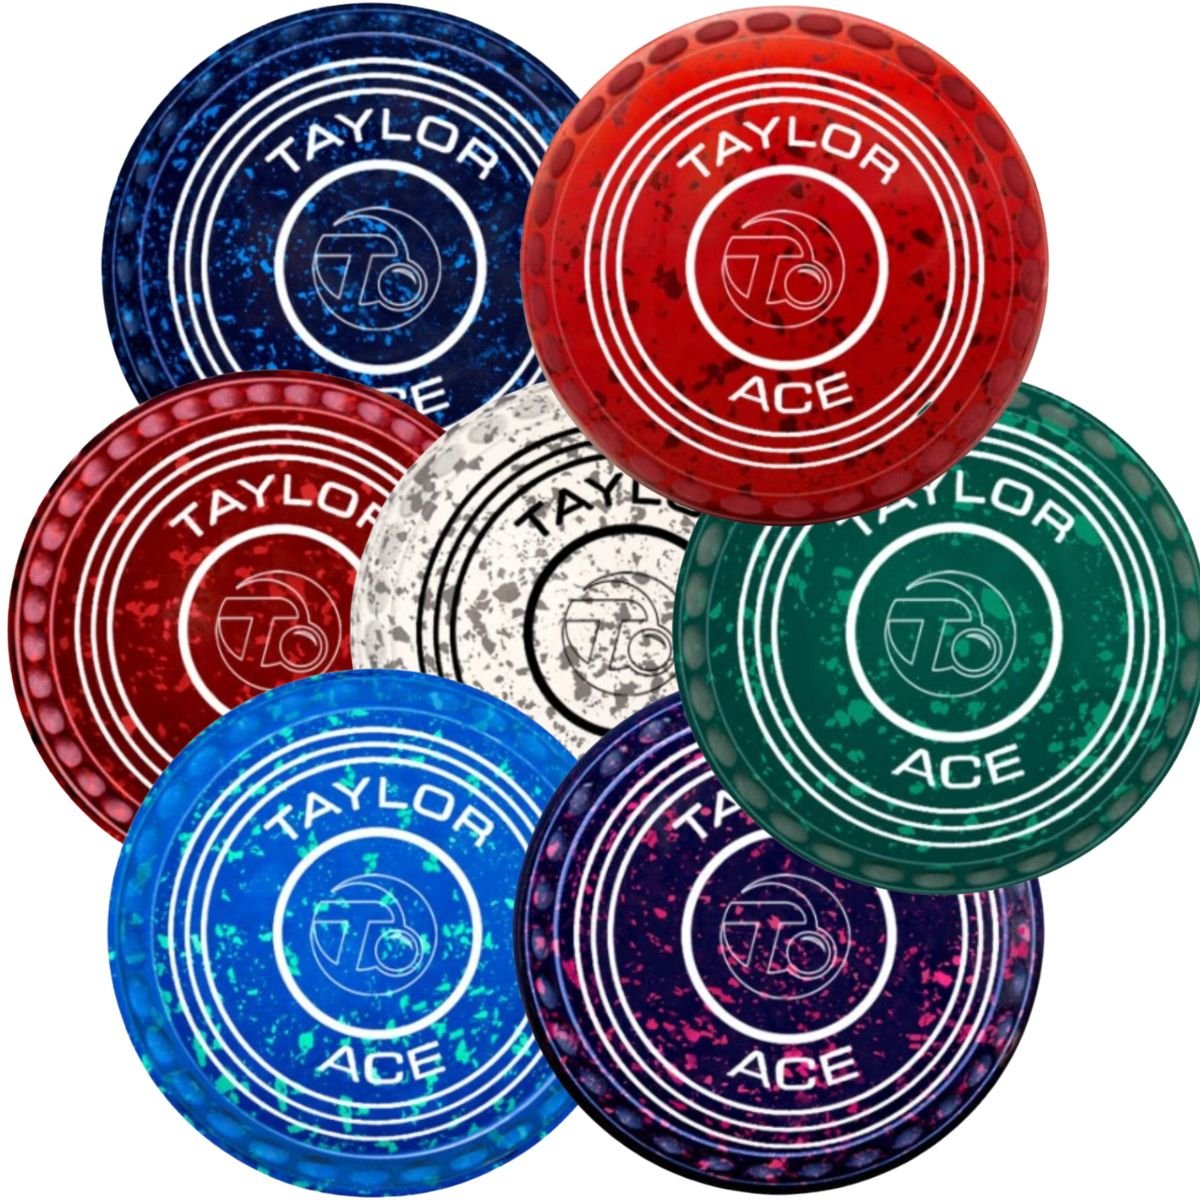 Taylor Ace Pro-Grip Coloured Bowls - 0